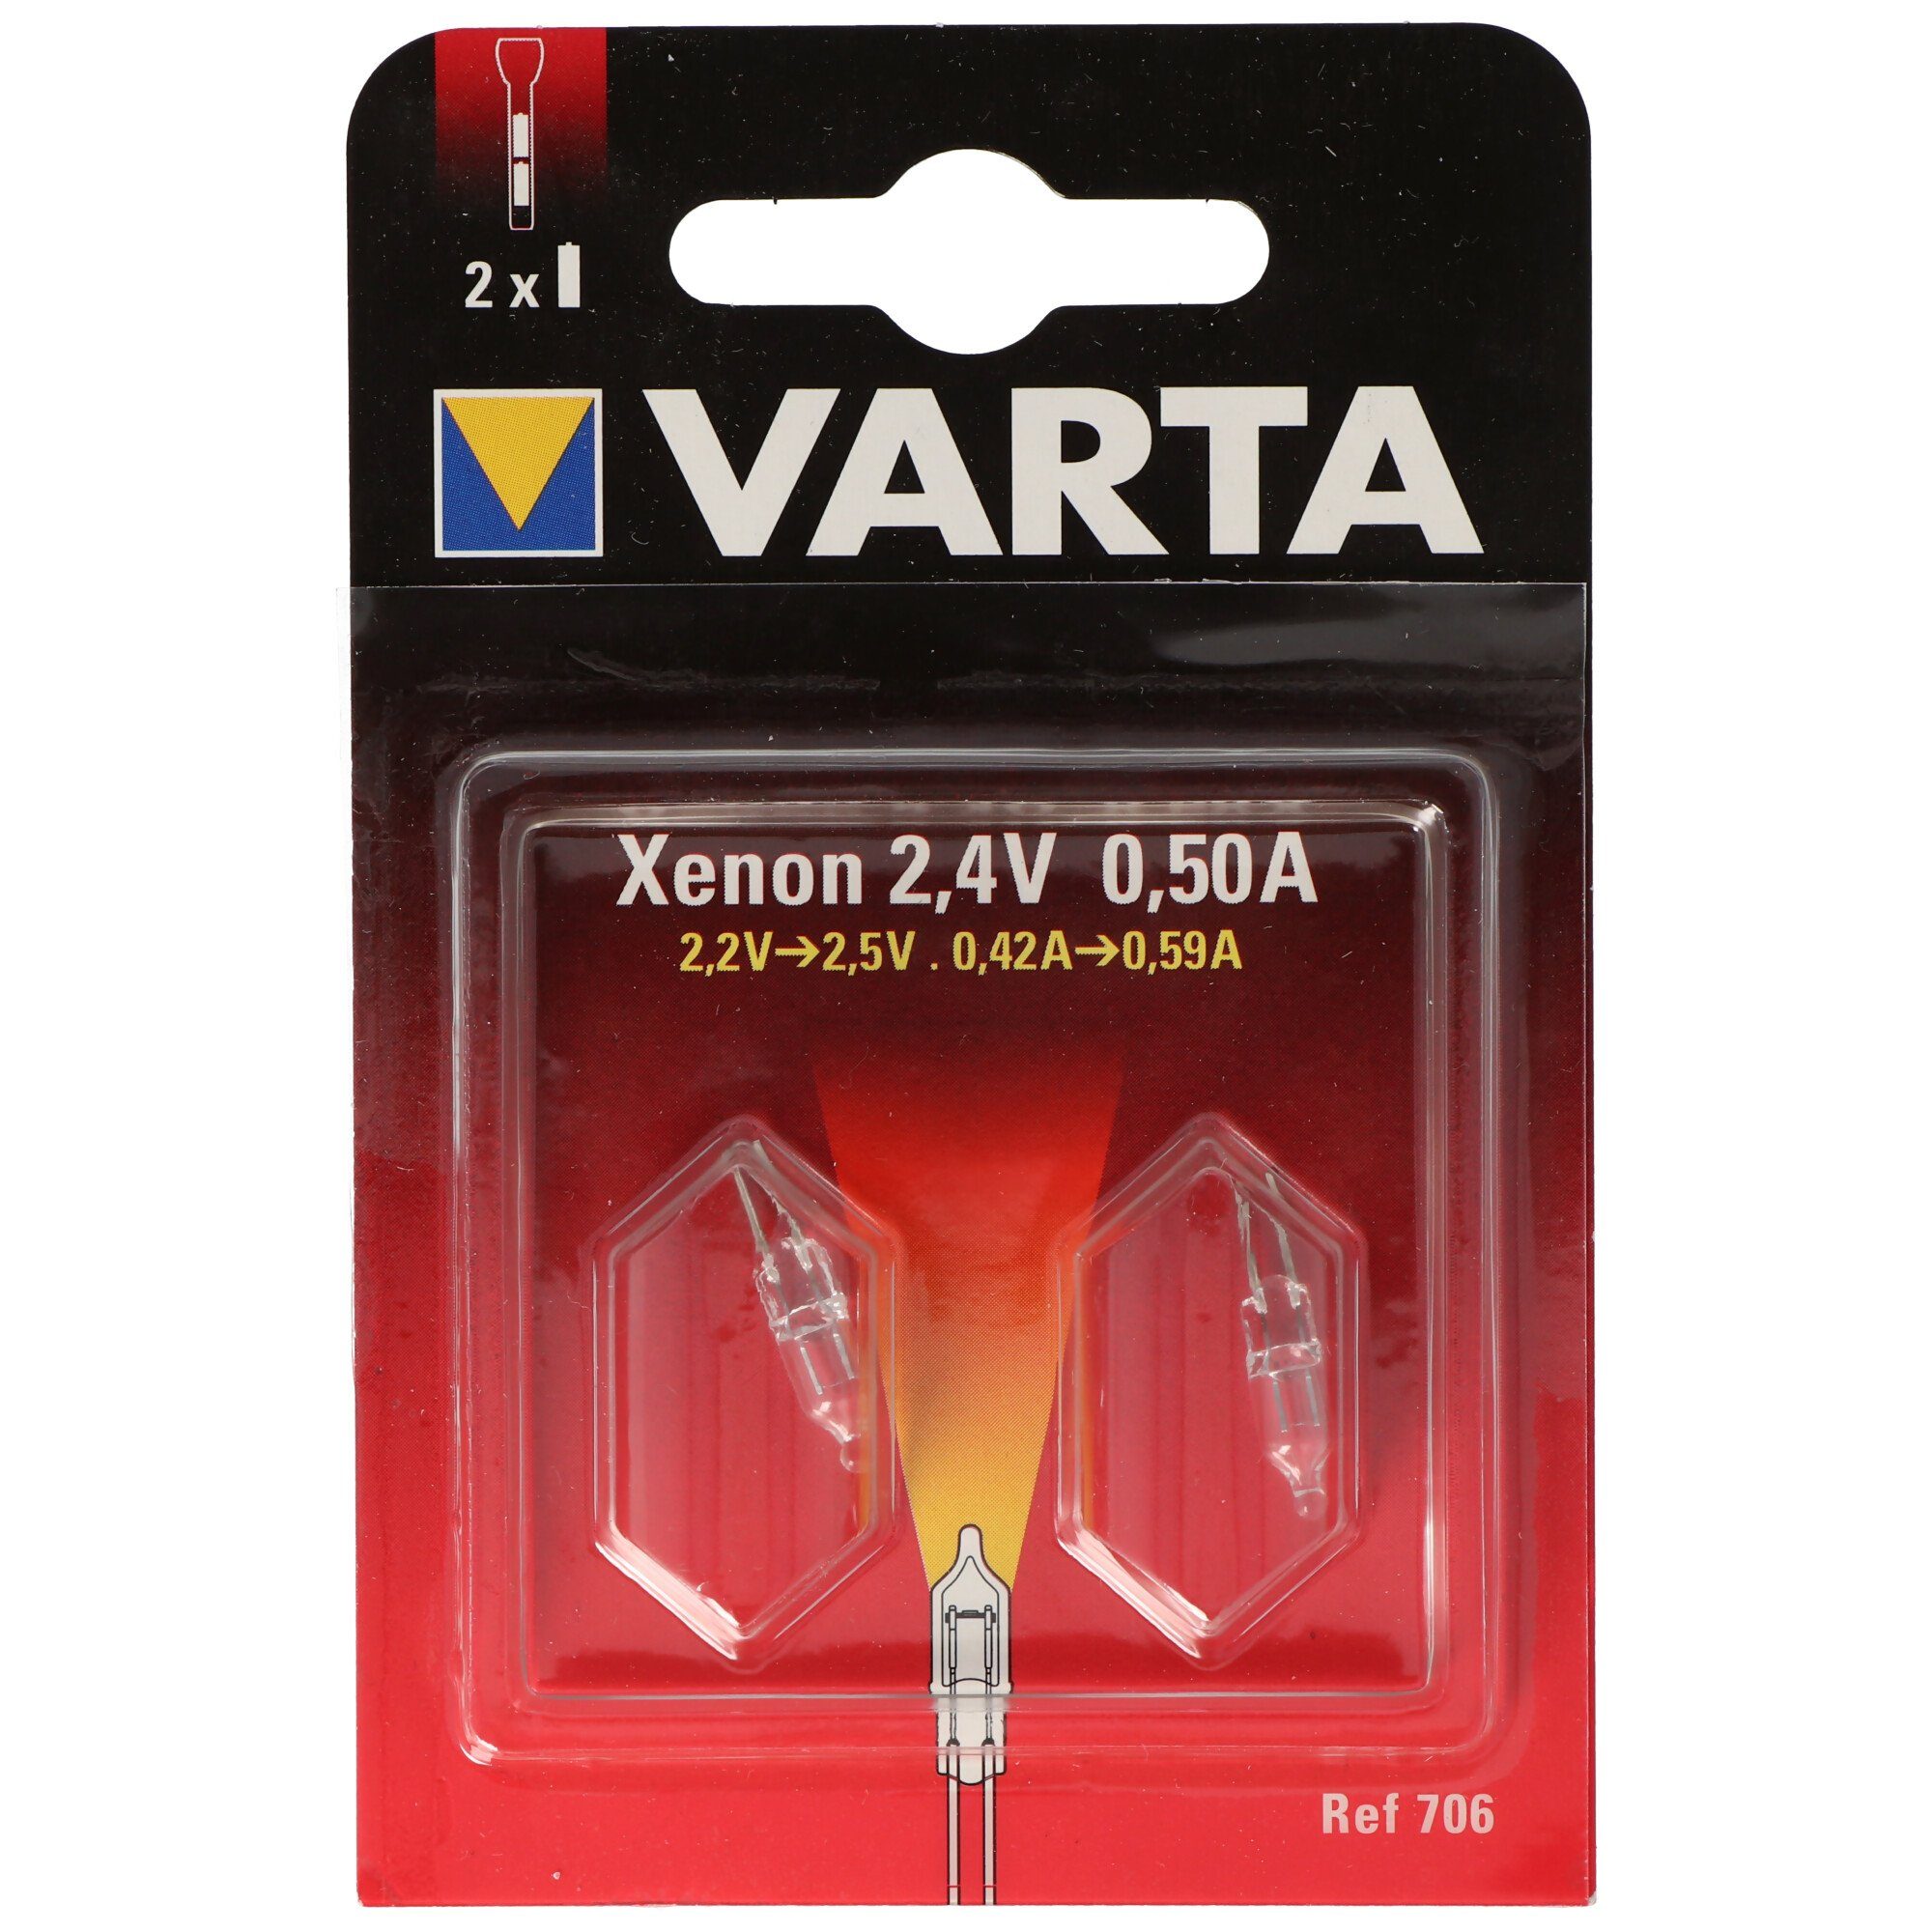 VARTA LED Taschenlampe Varta Ersatzbirnchen 706, Varta 00706000402